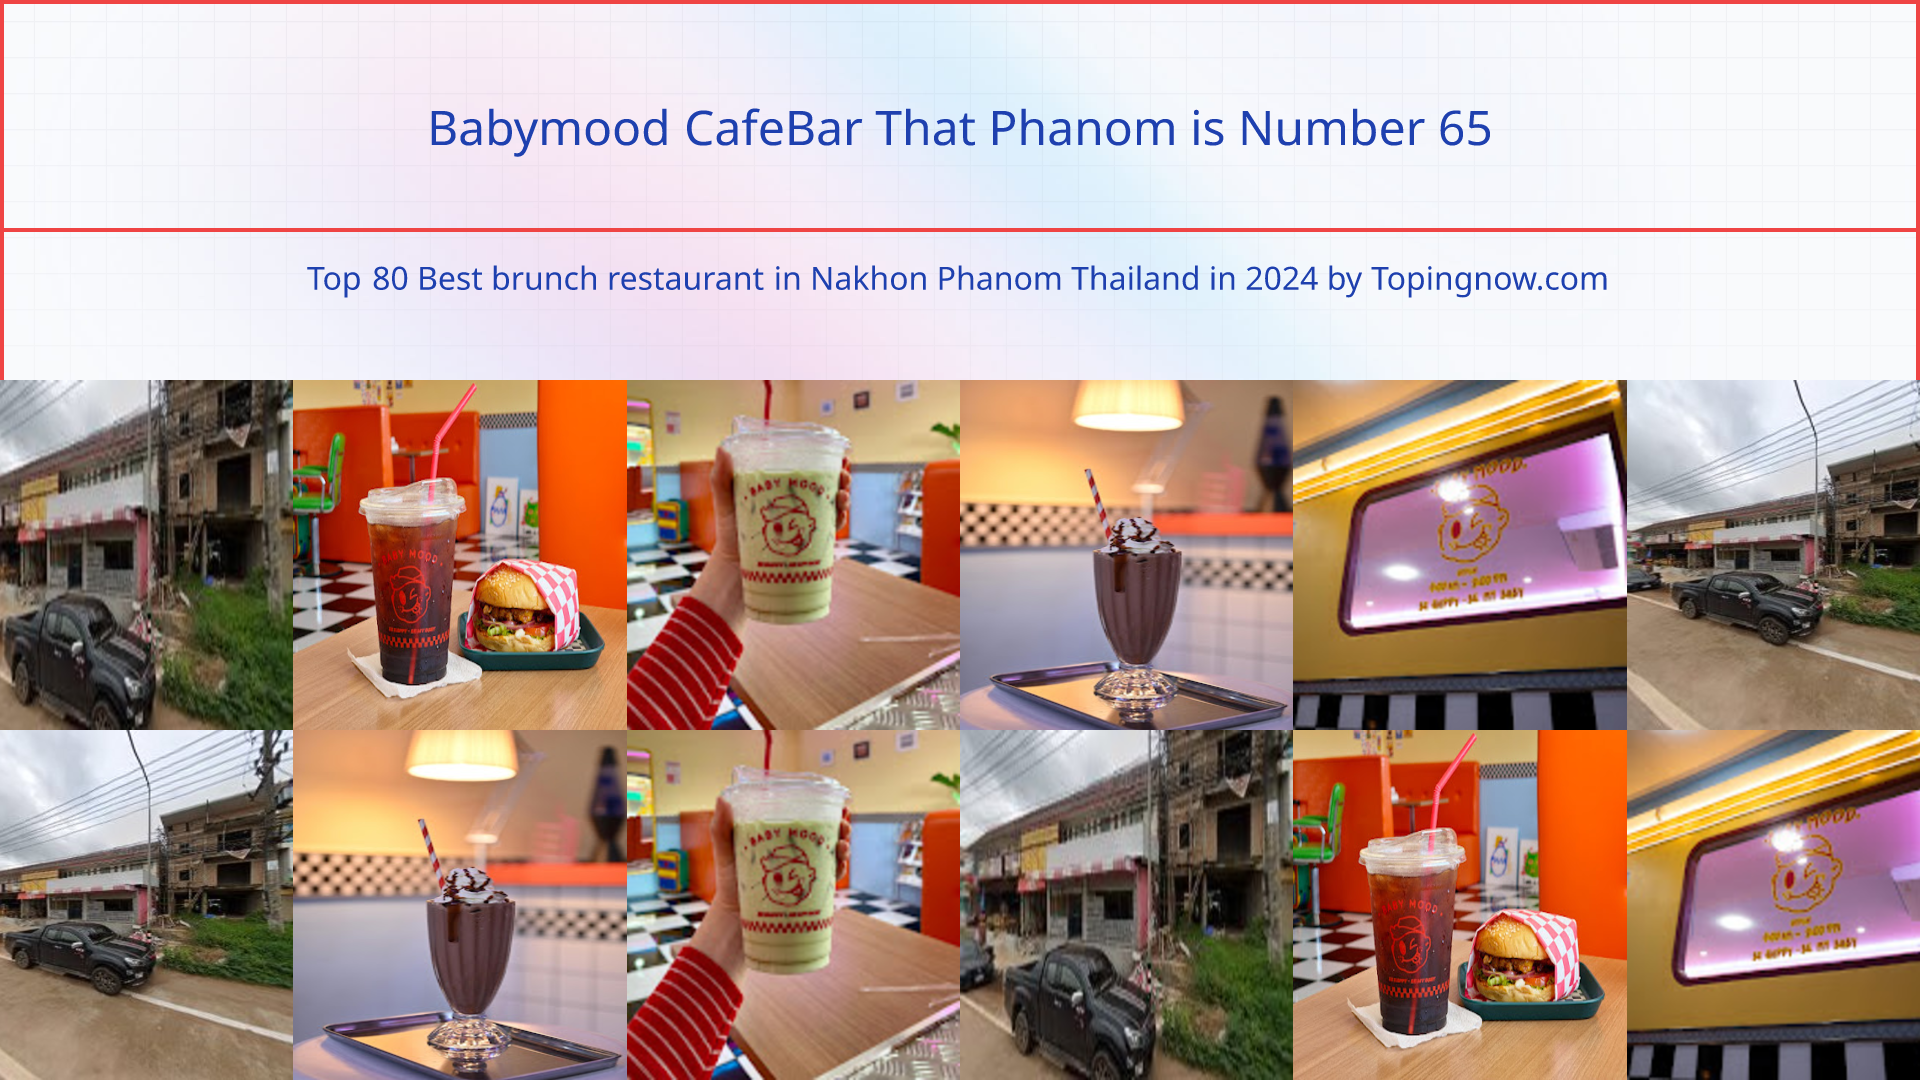 Babymood CafeBar That Phanom: Top 80 Best brunch restaurant in Nakhon Phanom Thailand in 2024